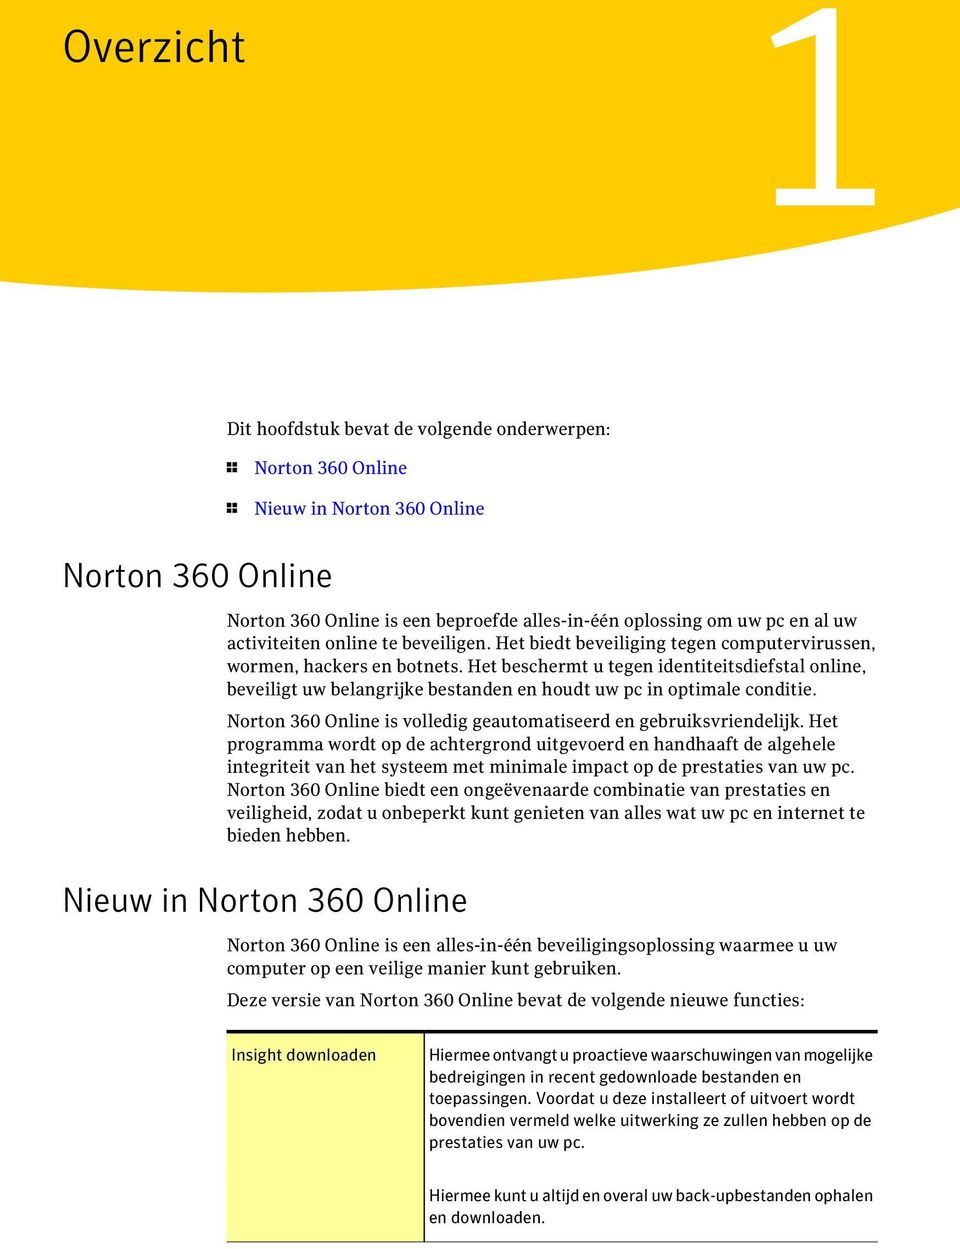 Het beschermt u tegen identiteitsdiefstal online, beveiligt uw belangrijke bestanden en houdt uw pc in optimale conditie. Norton 360 Online is volledig geautomatiseerd en gebruiksvriendelijk.